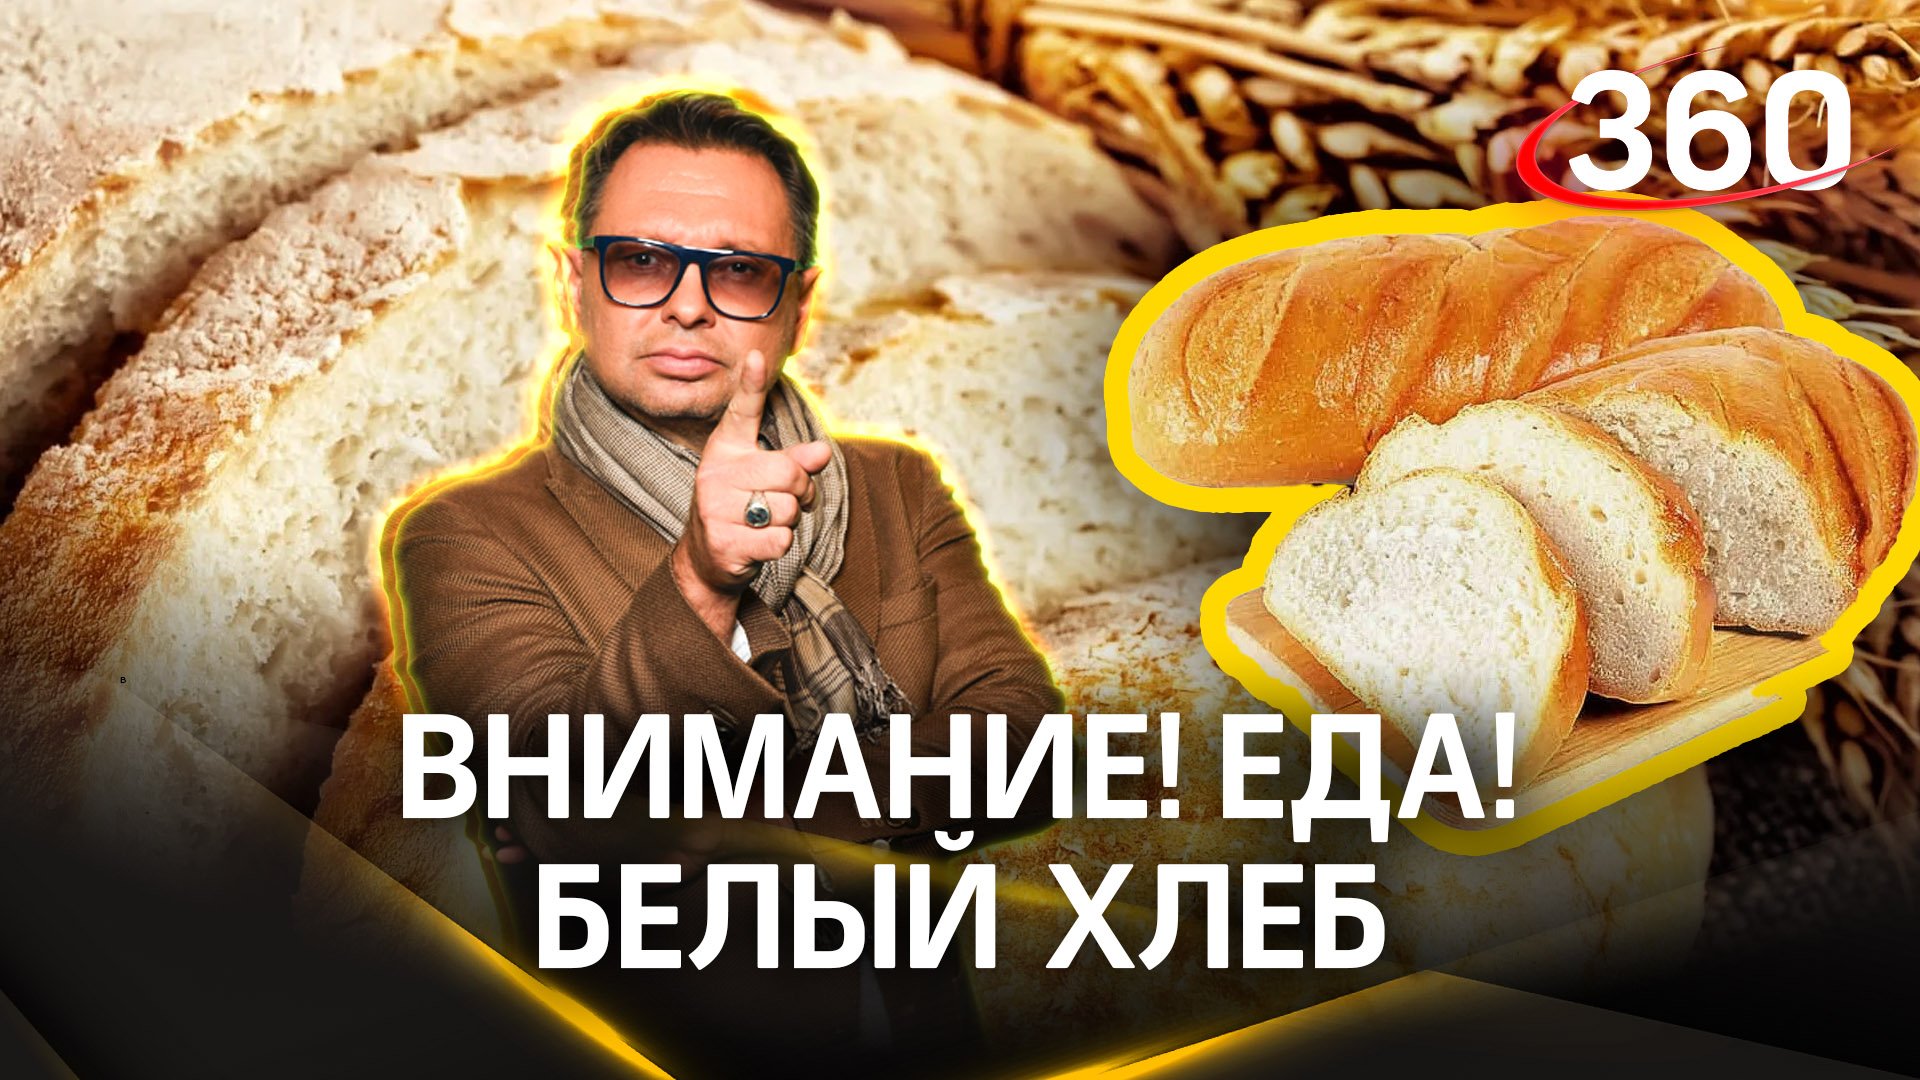 Самый лучший белый хлеб: как выбрать? Внимание! Еда!